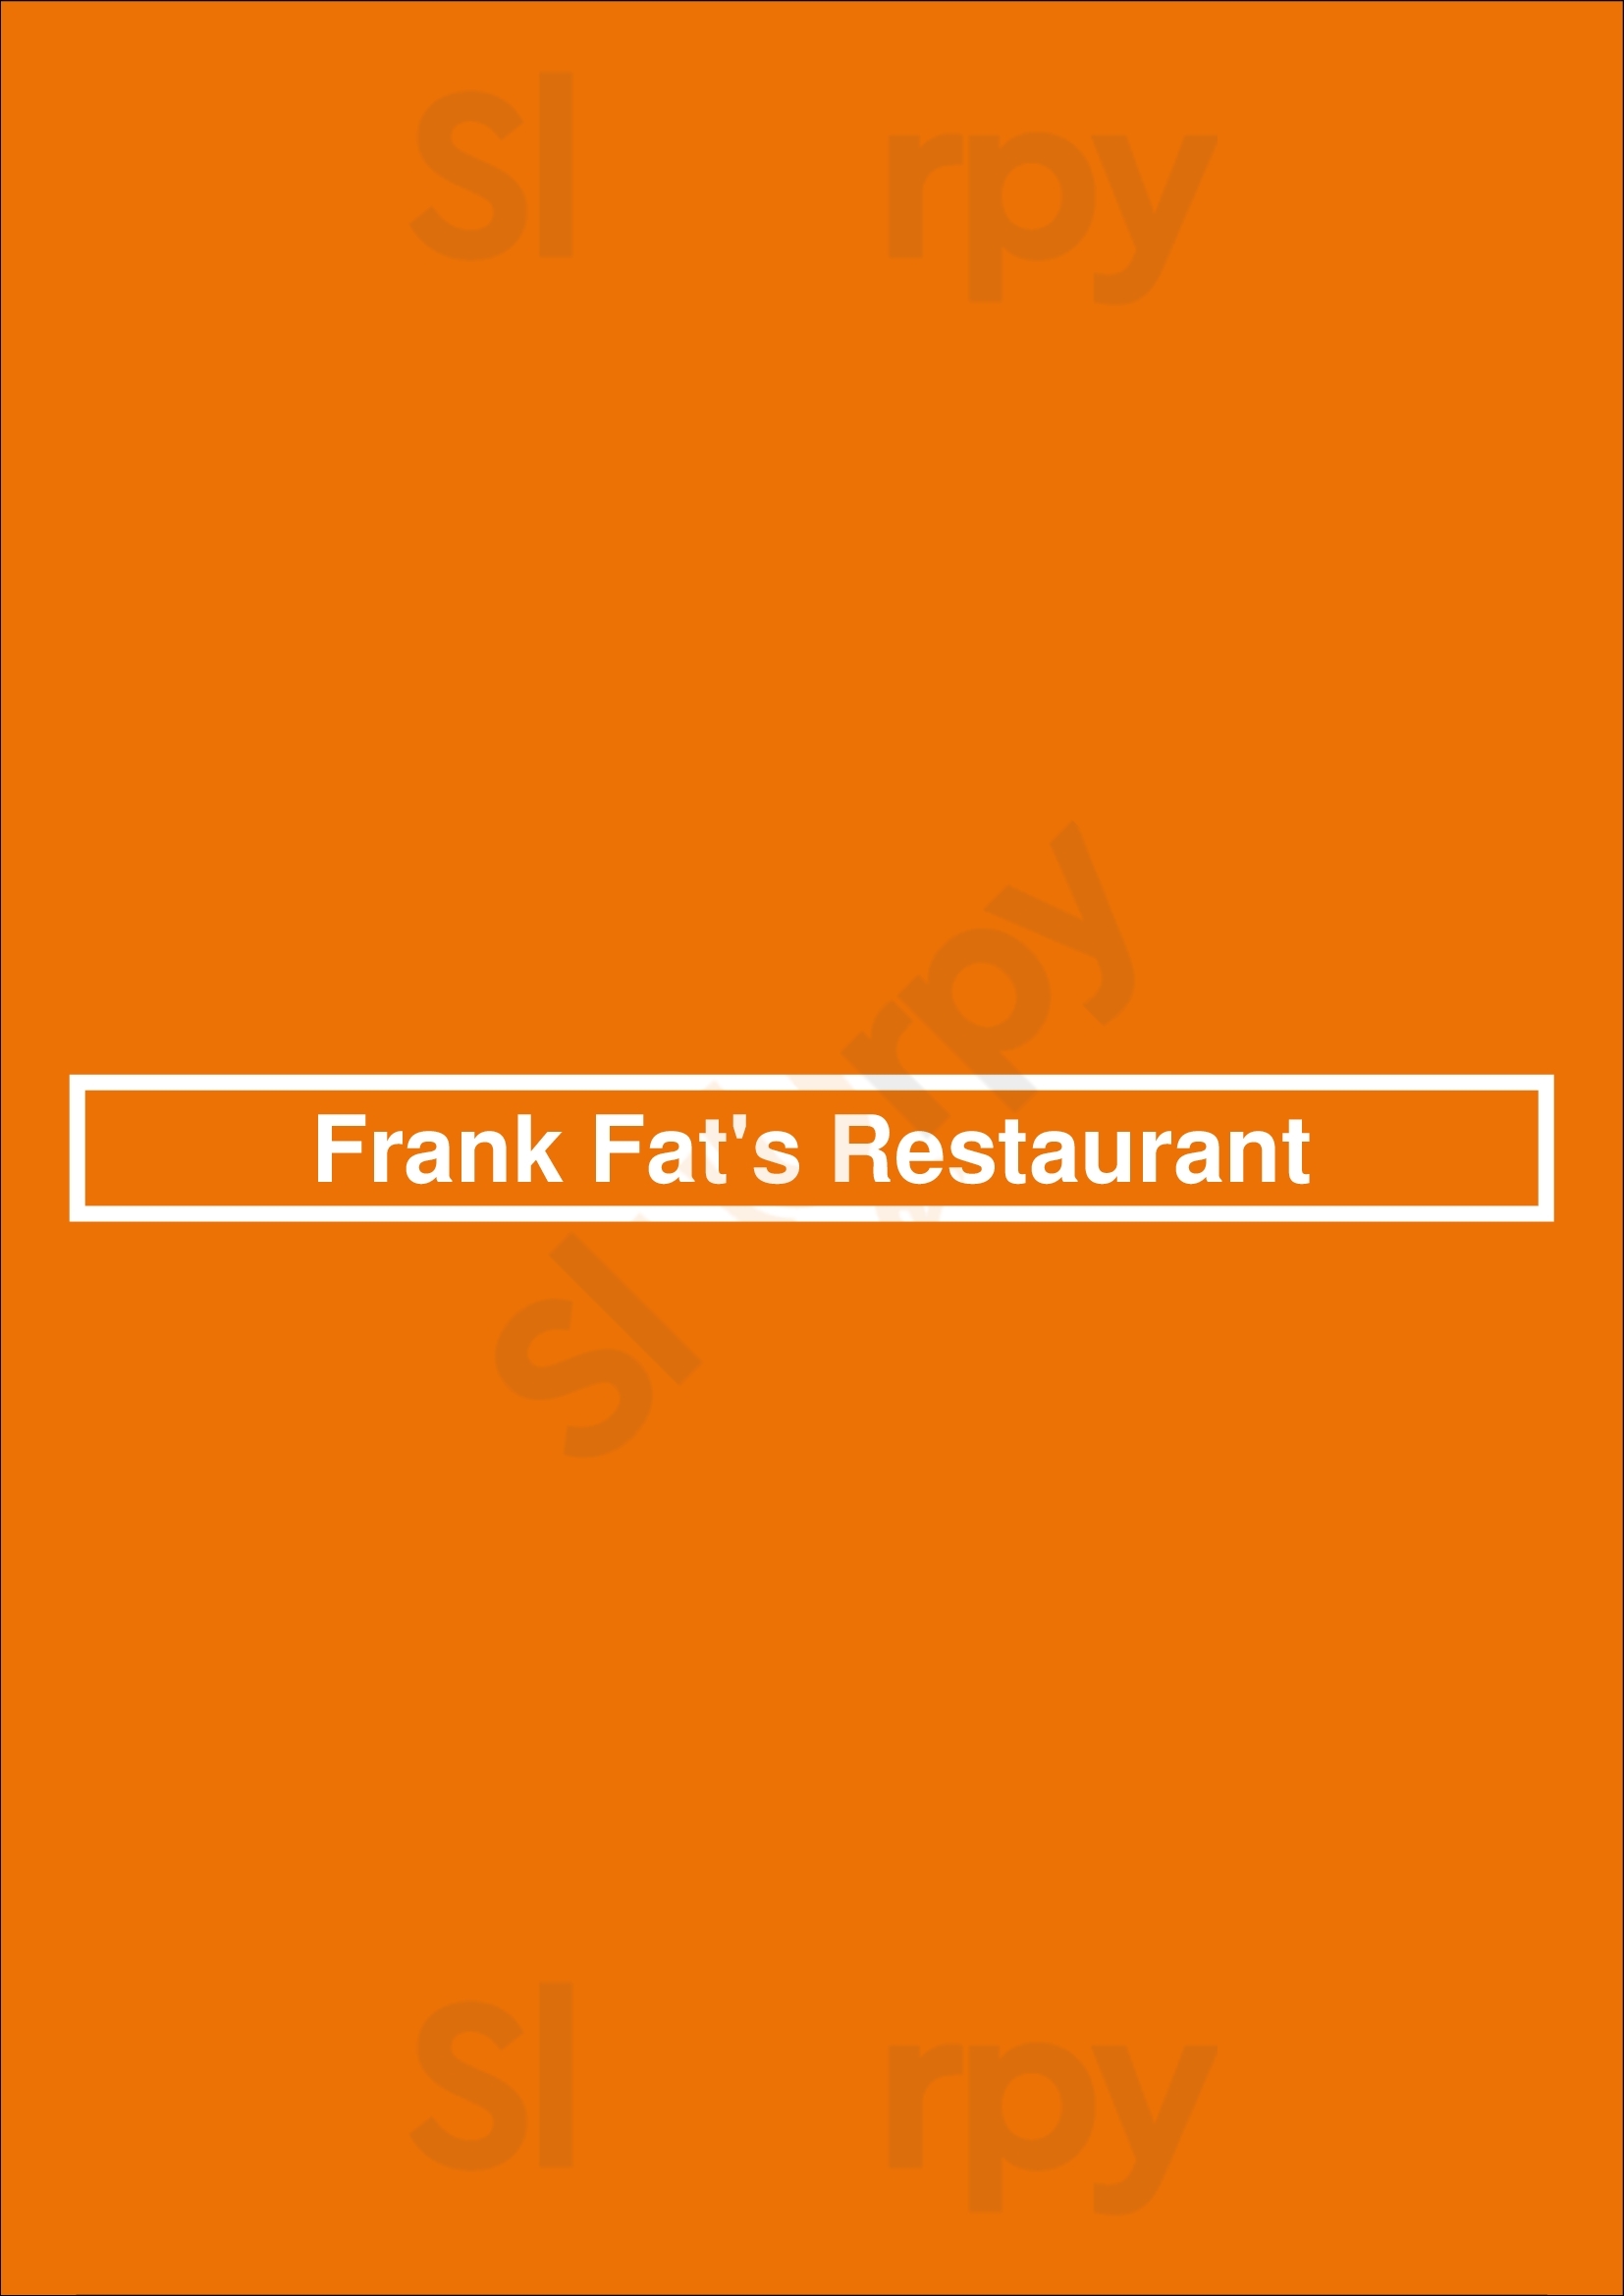 Frank Fat's Restaurant Sacramento Menu - 1